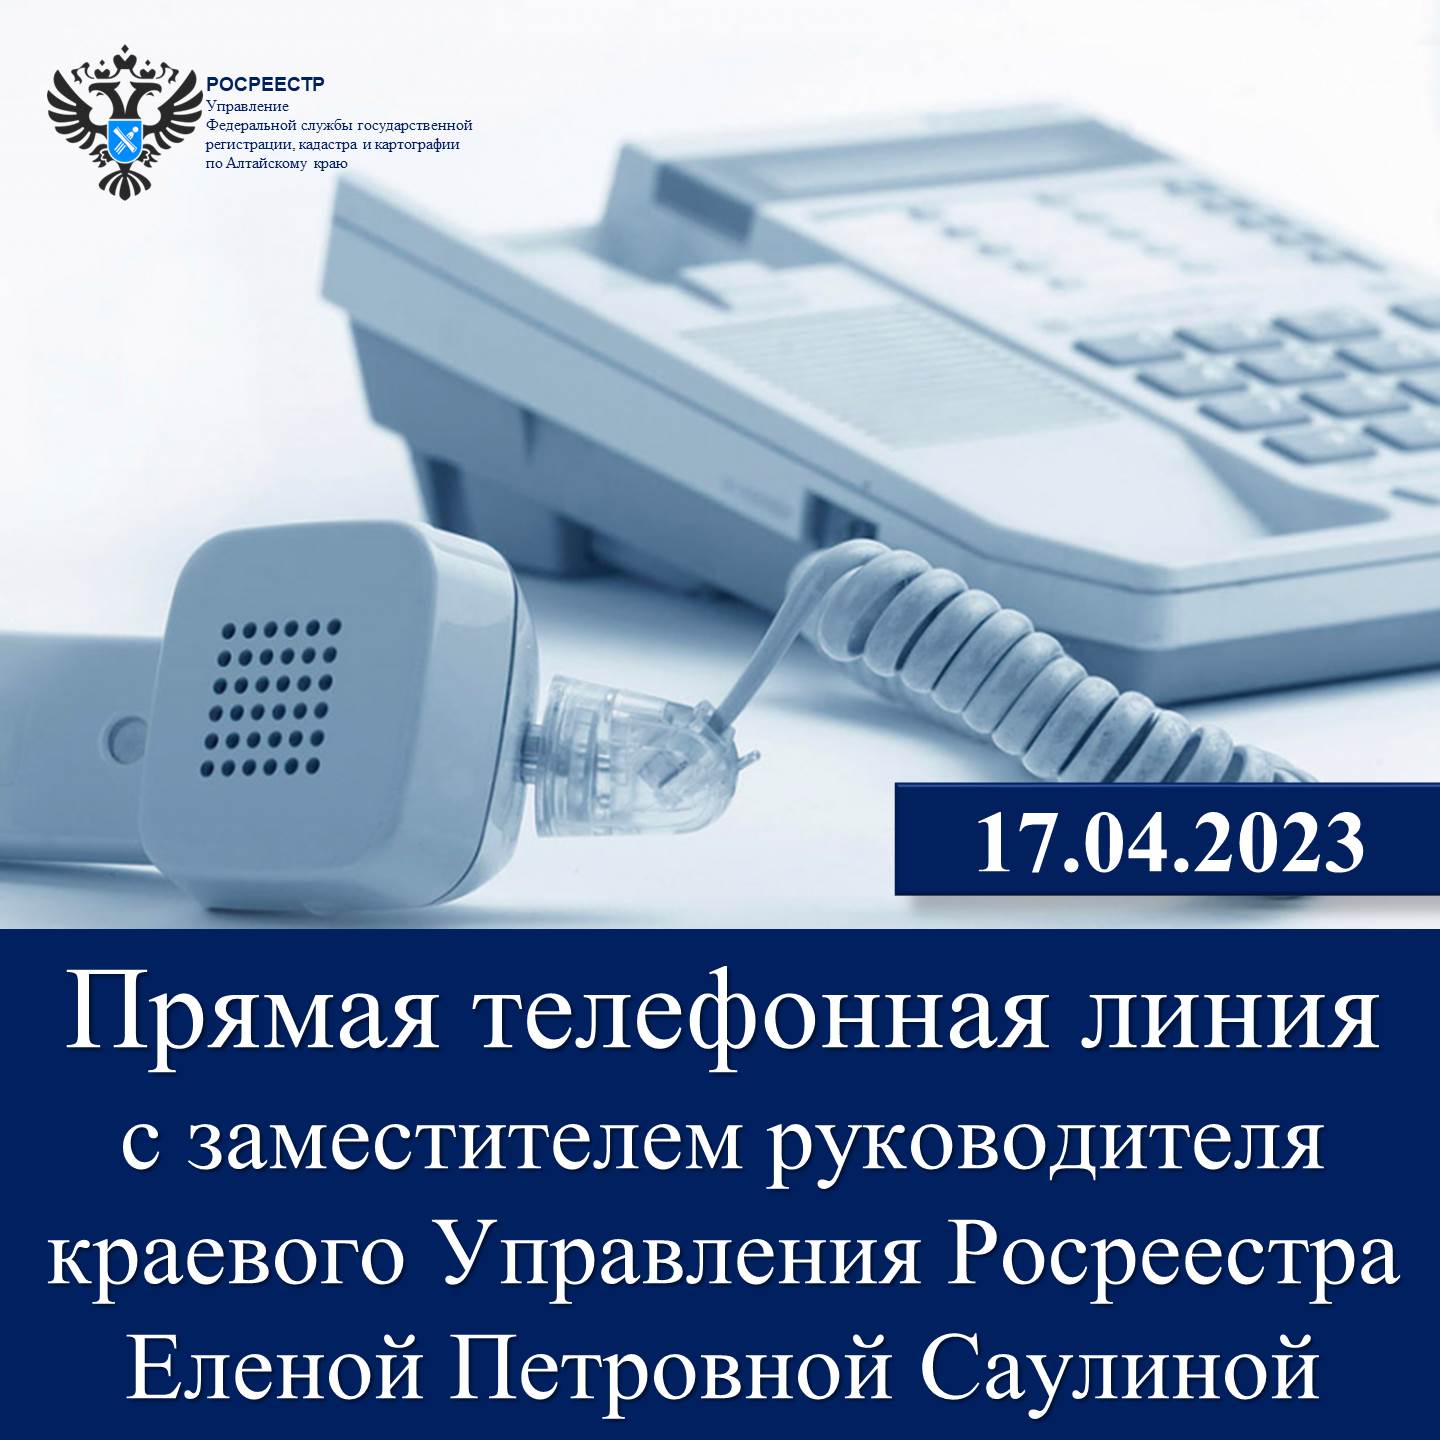 17 апреля состоится «Прямая телефонная линия» с заместителем руководителя краевого Управления Росреестра  Еленой Петровной Саулиной.